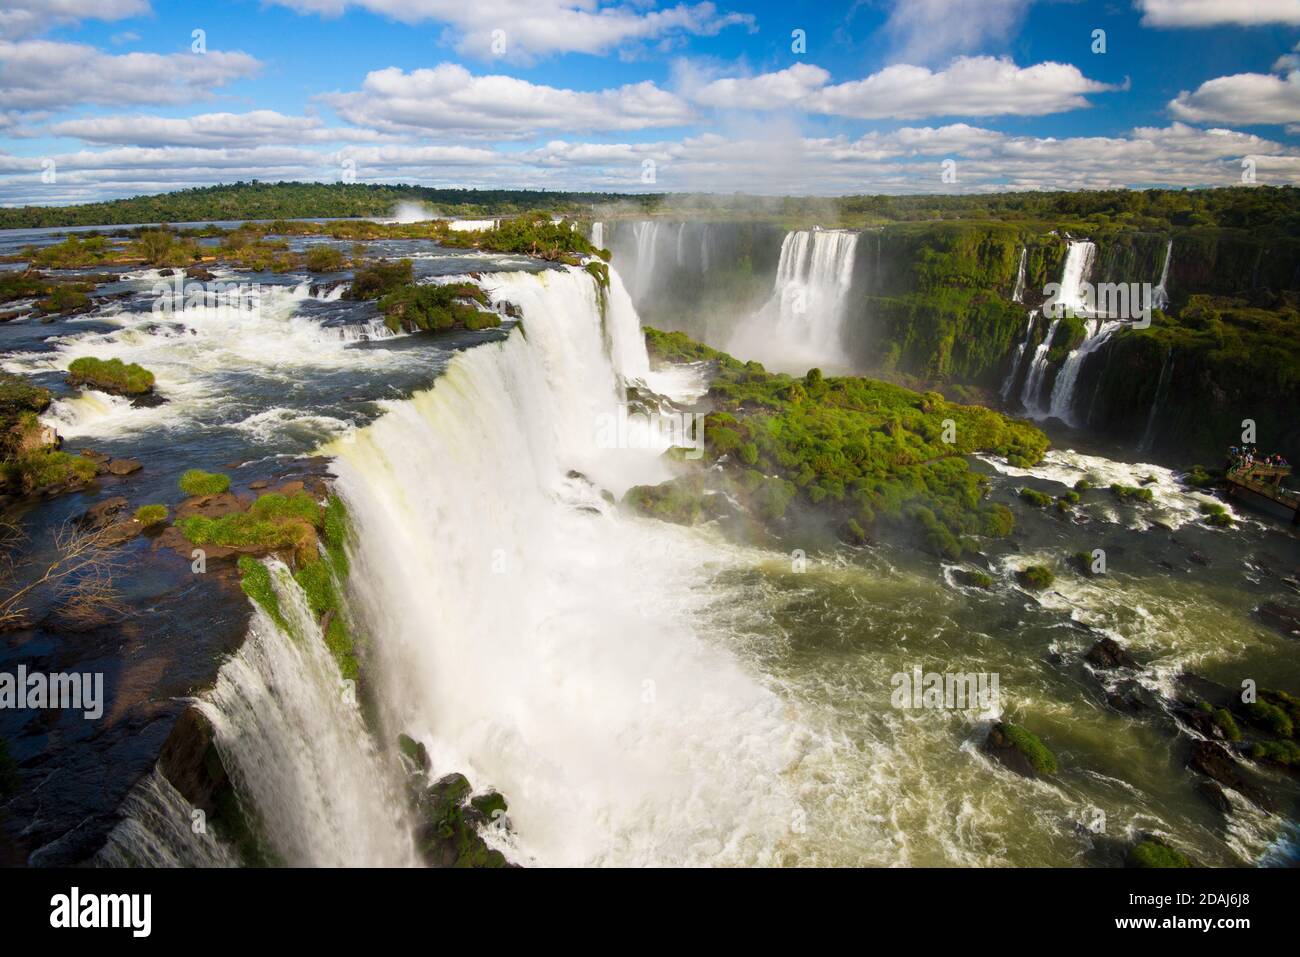 Blick auf die Iguazu Wasserfälle von der brasilianischen Seite - Foz do Iguazu, Brasilien Stockfoto